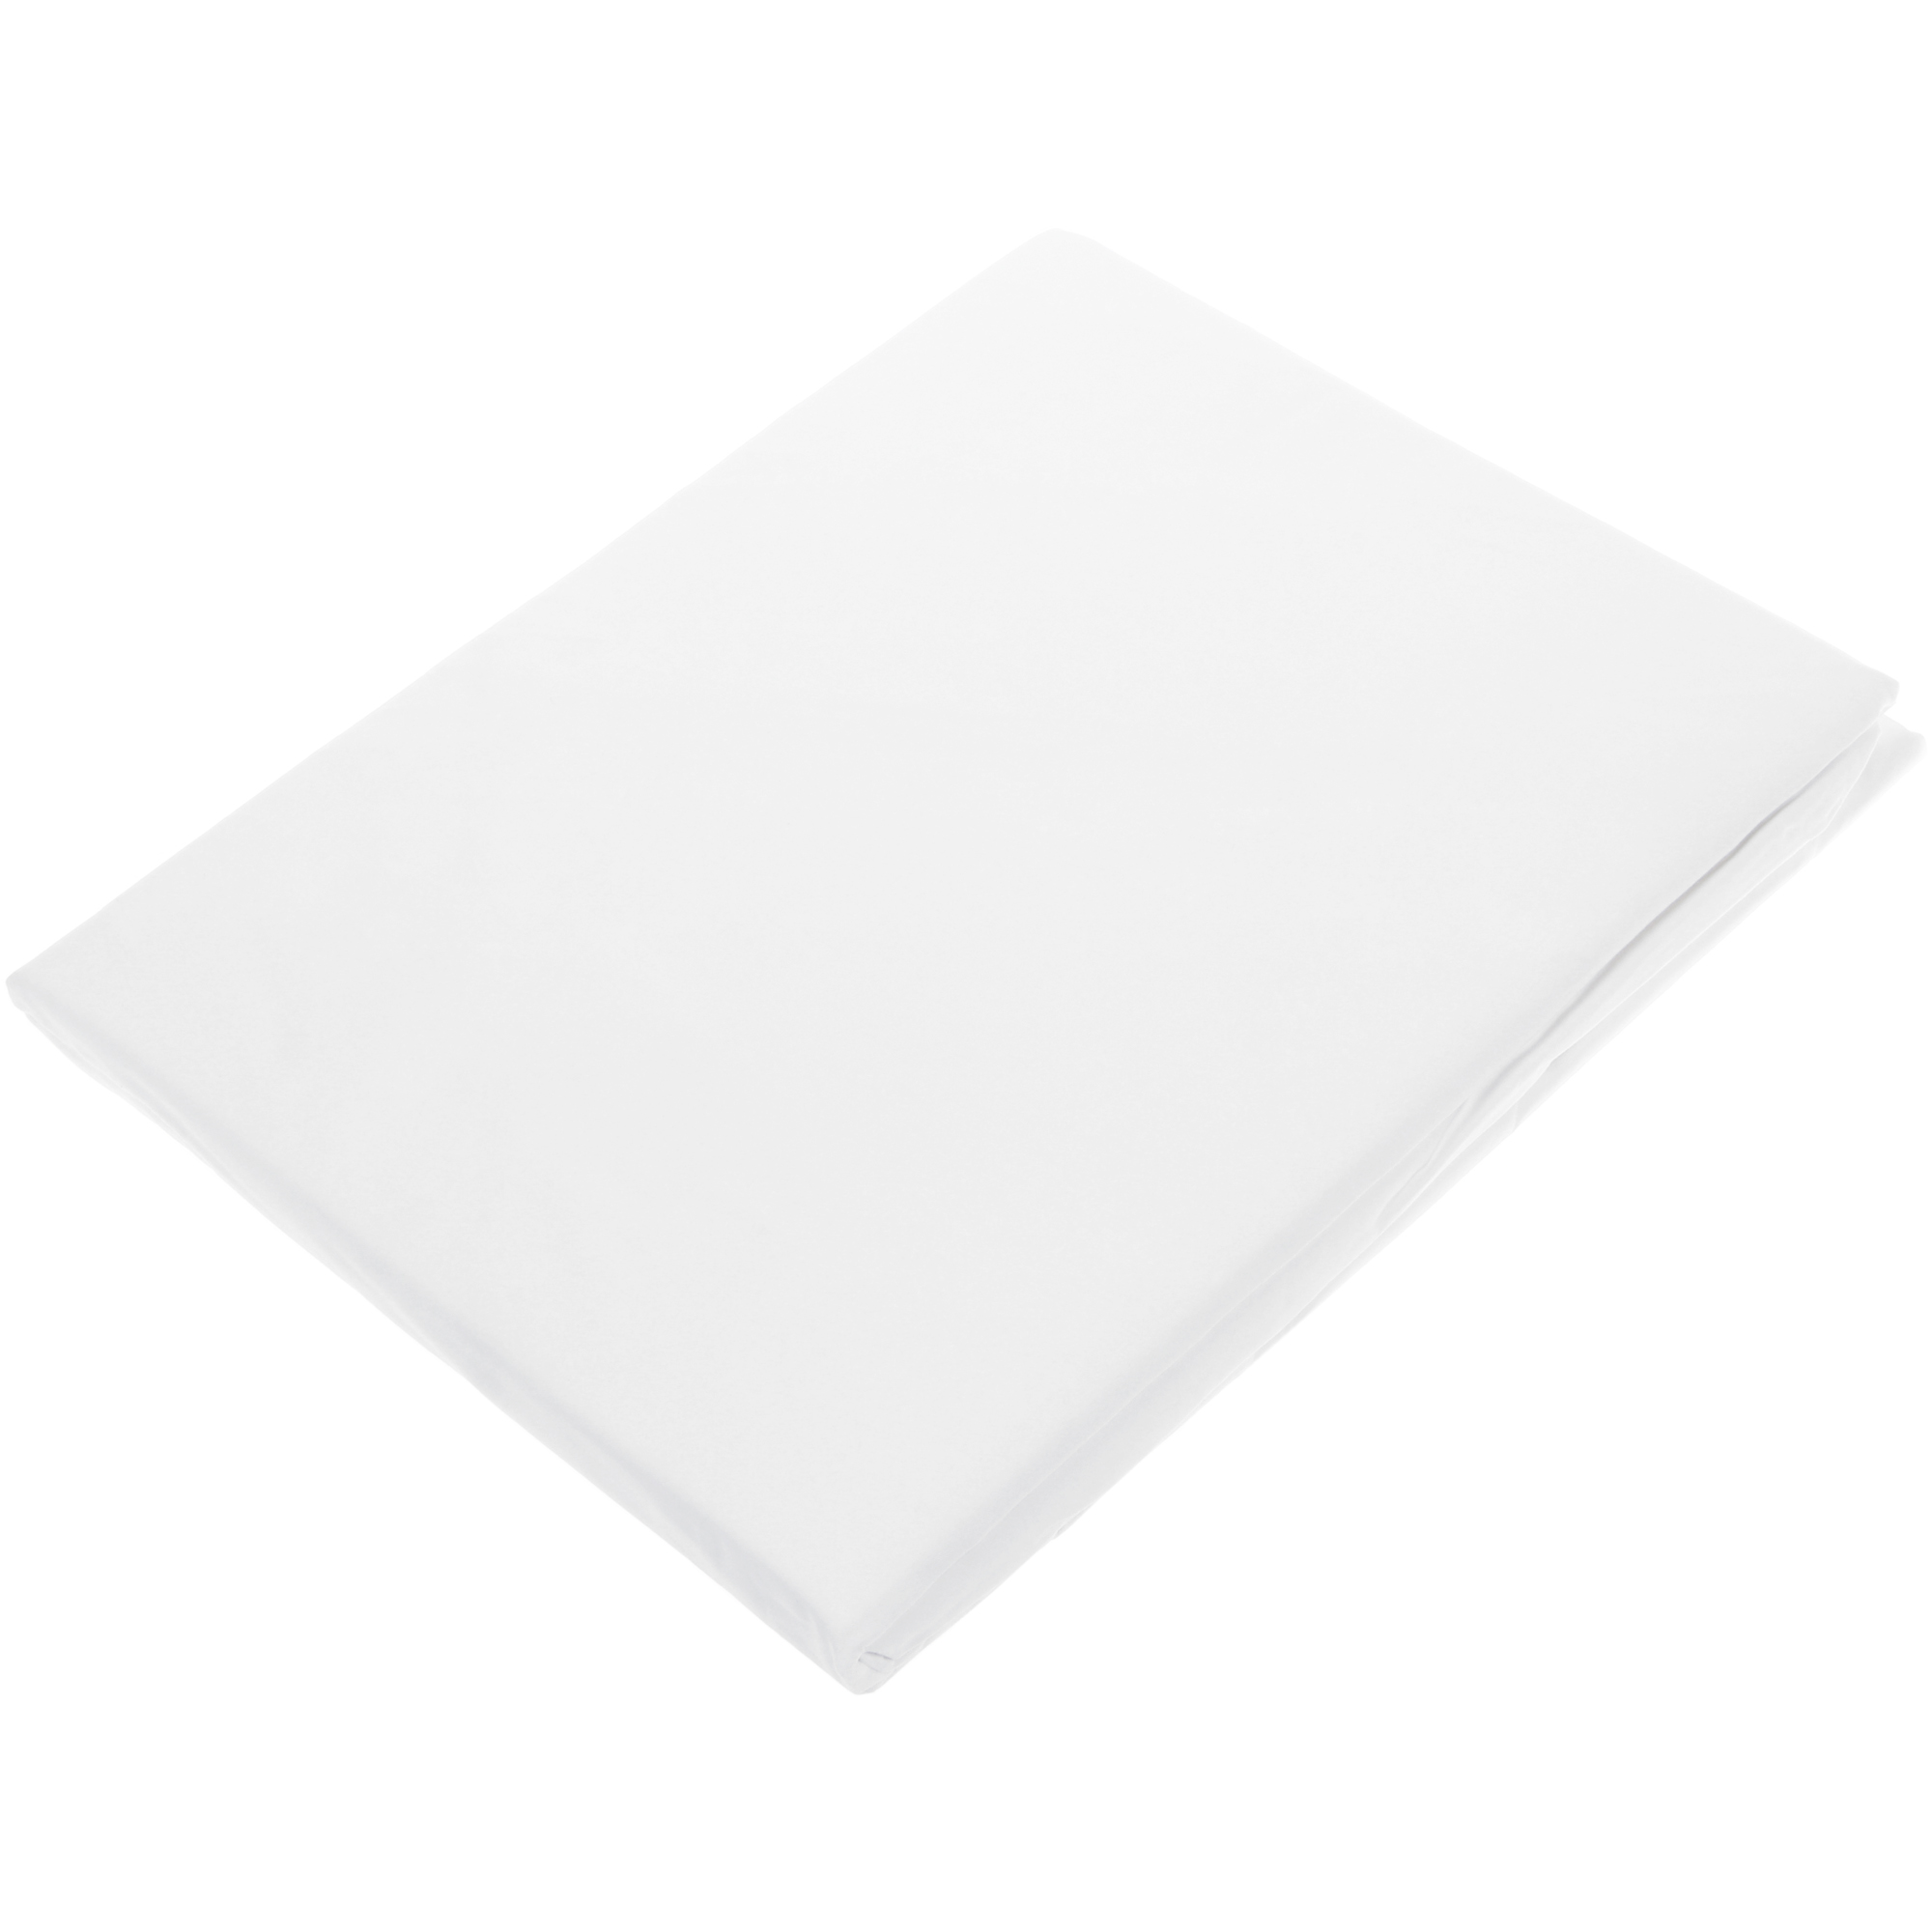 Простыня на резинке Togas Плаза белая 200х200 см простыня на резинке текстура серый р 200х200